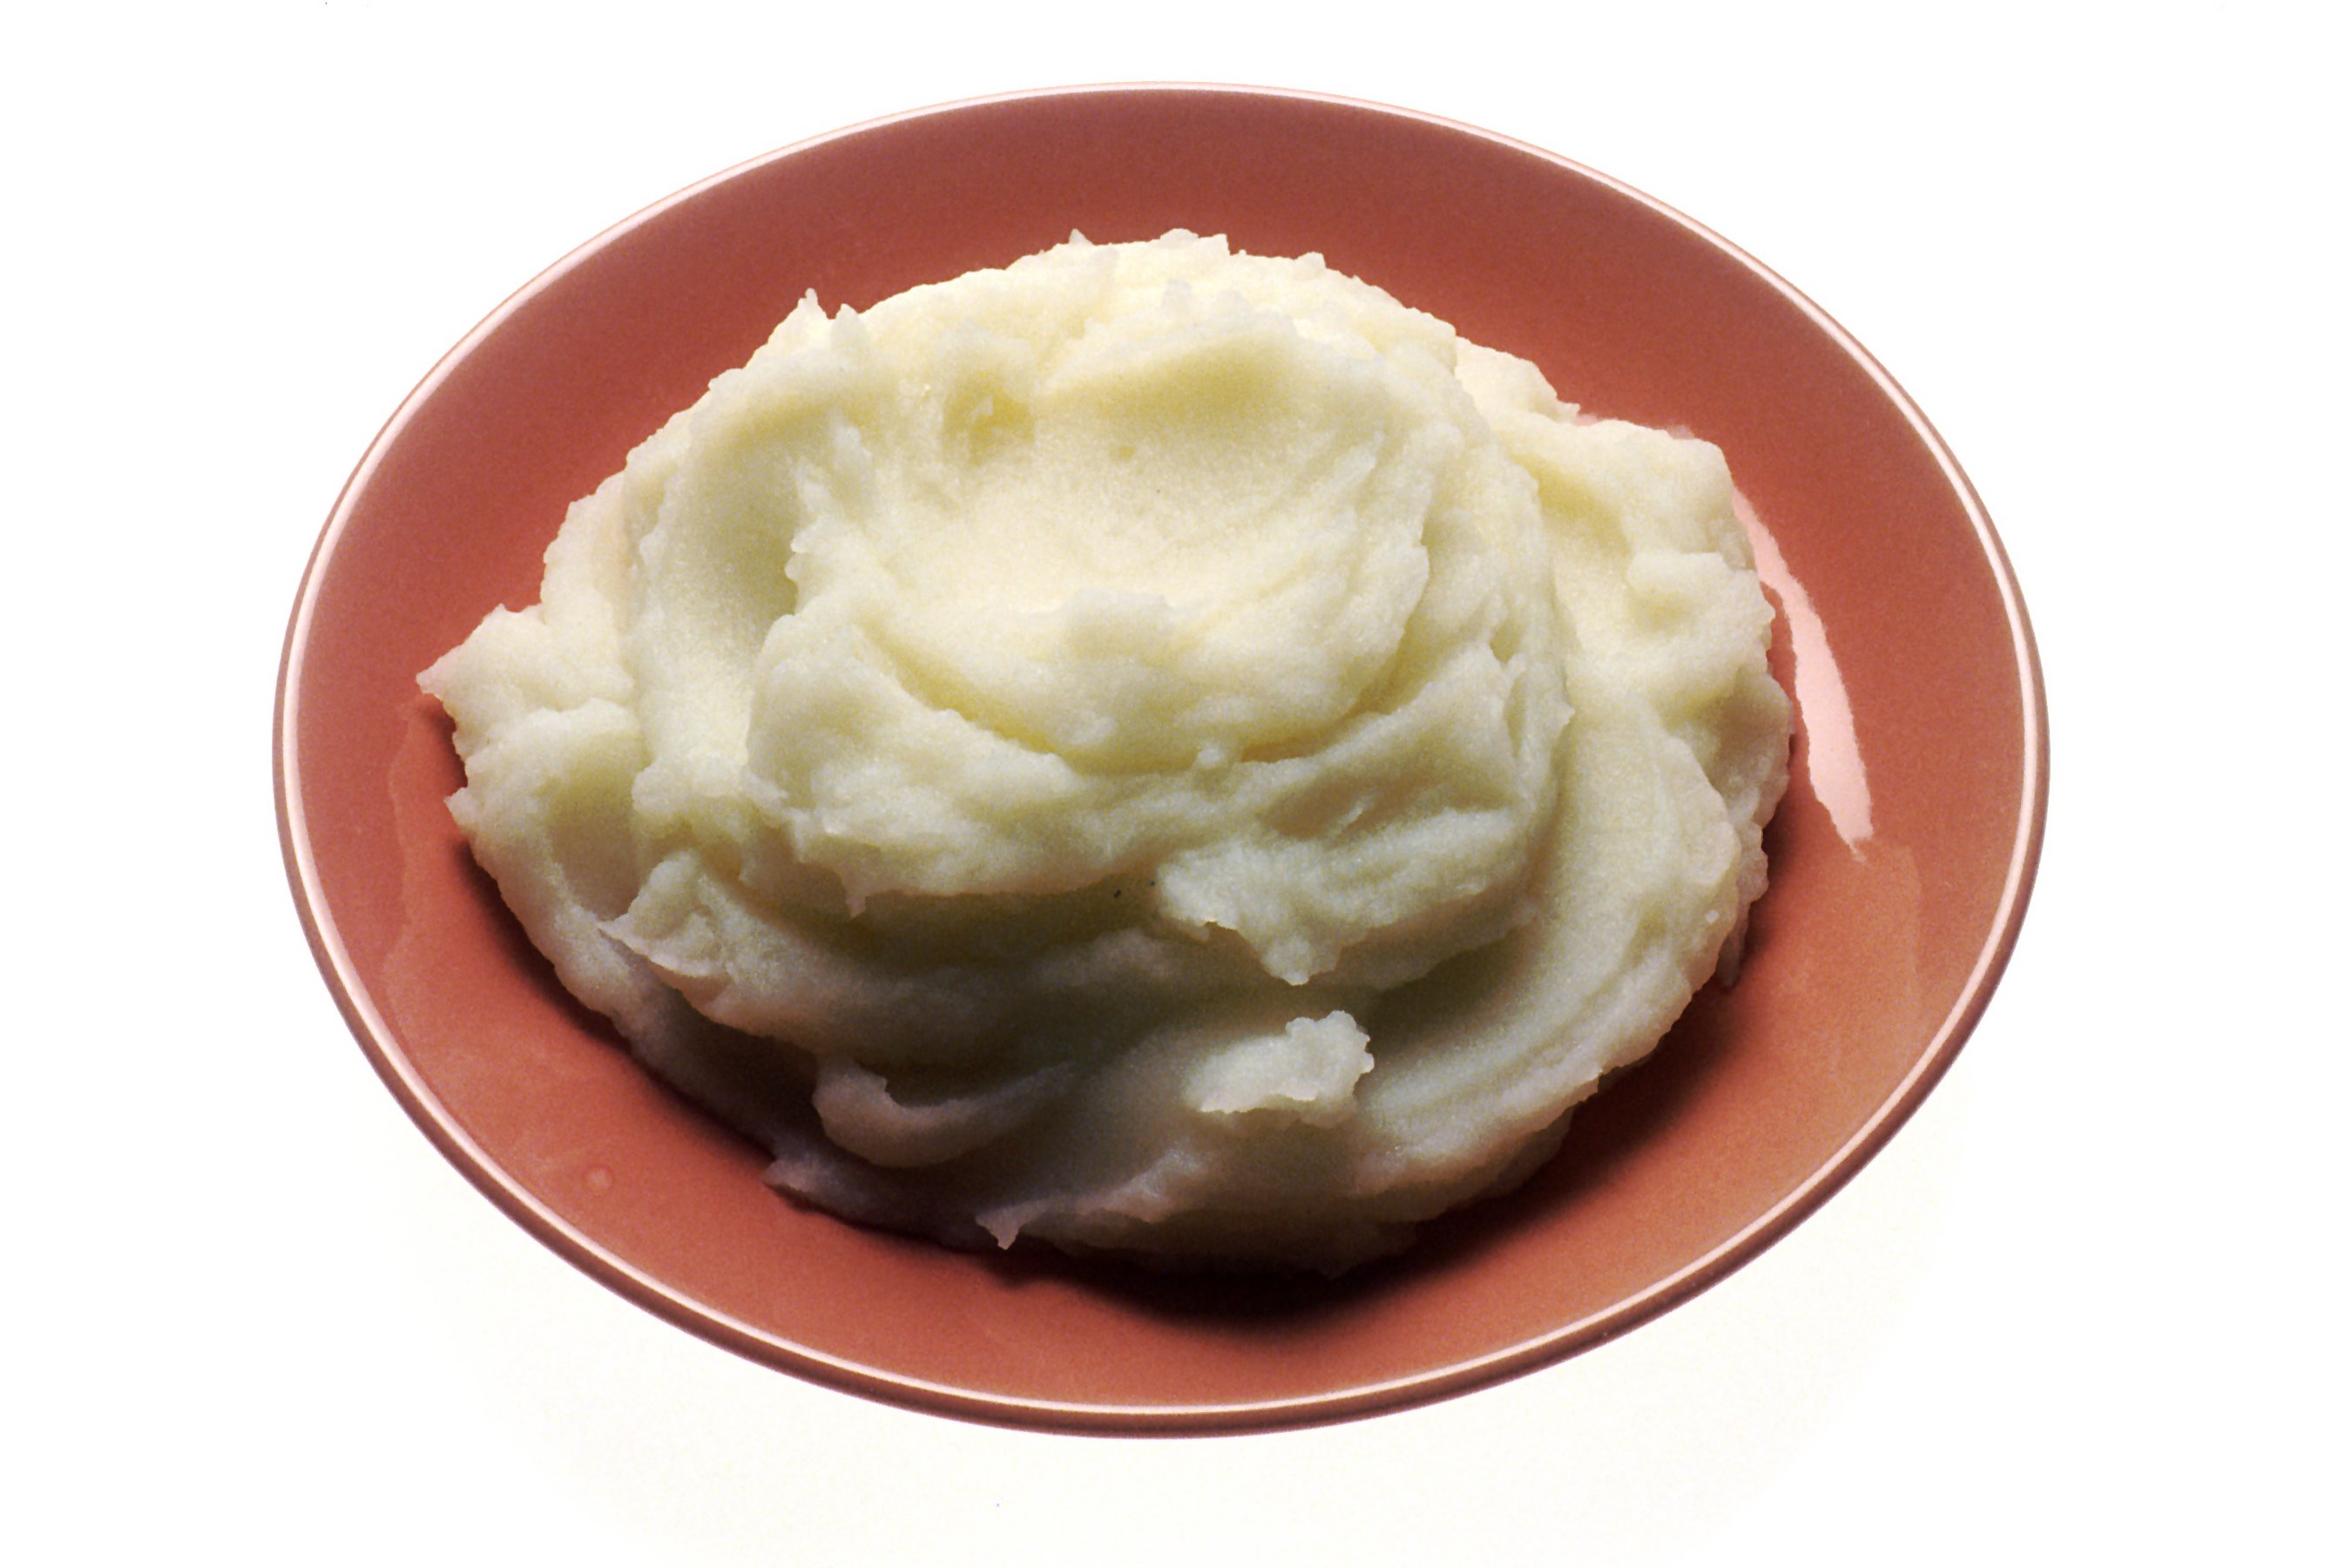 Mashed potato - Wikipedia